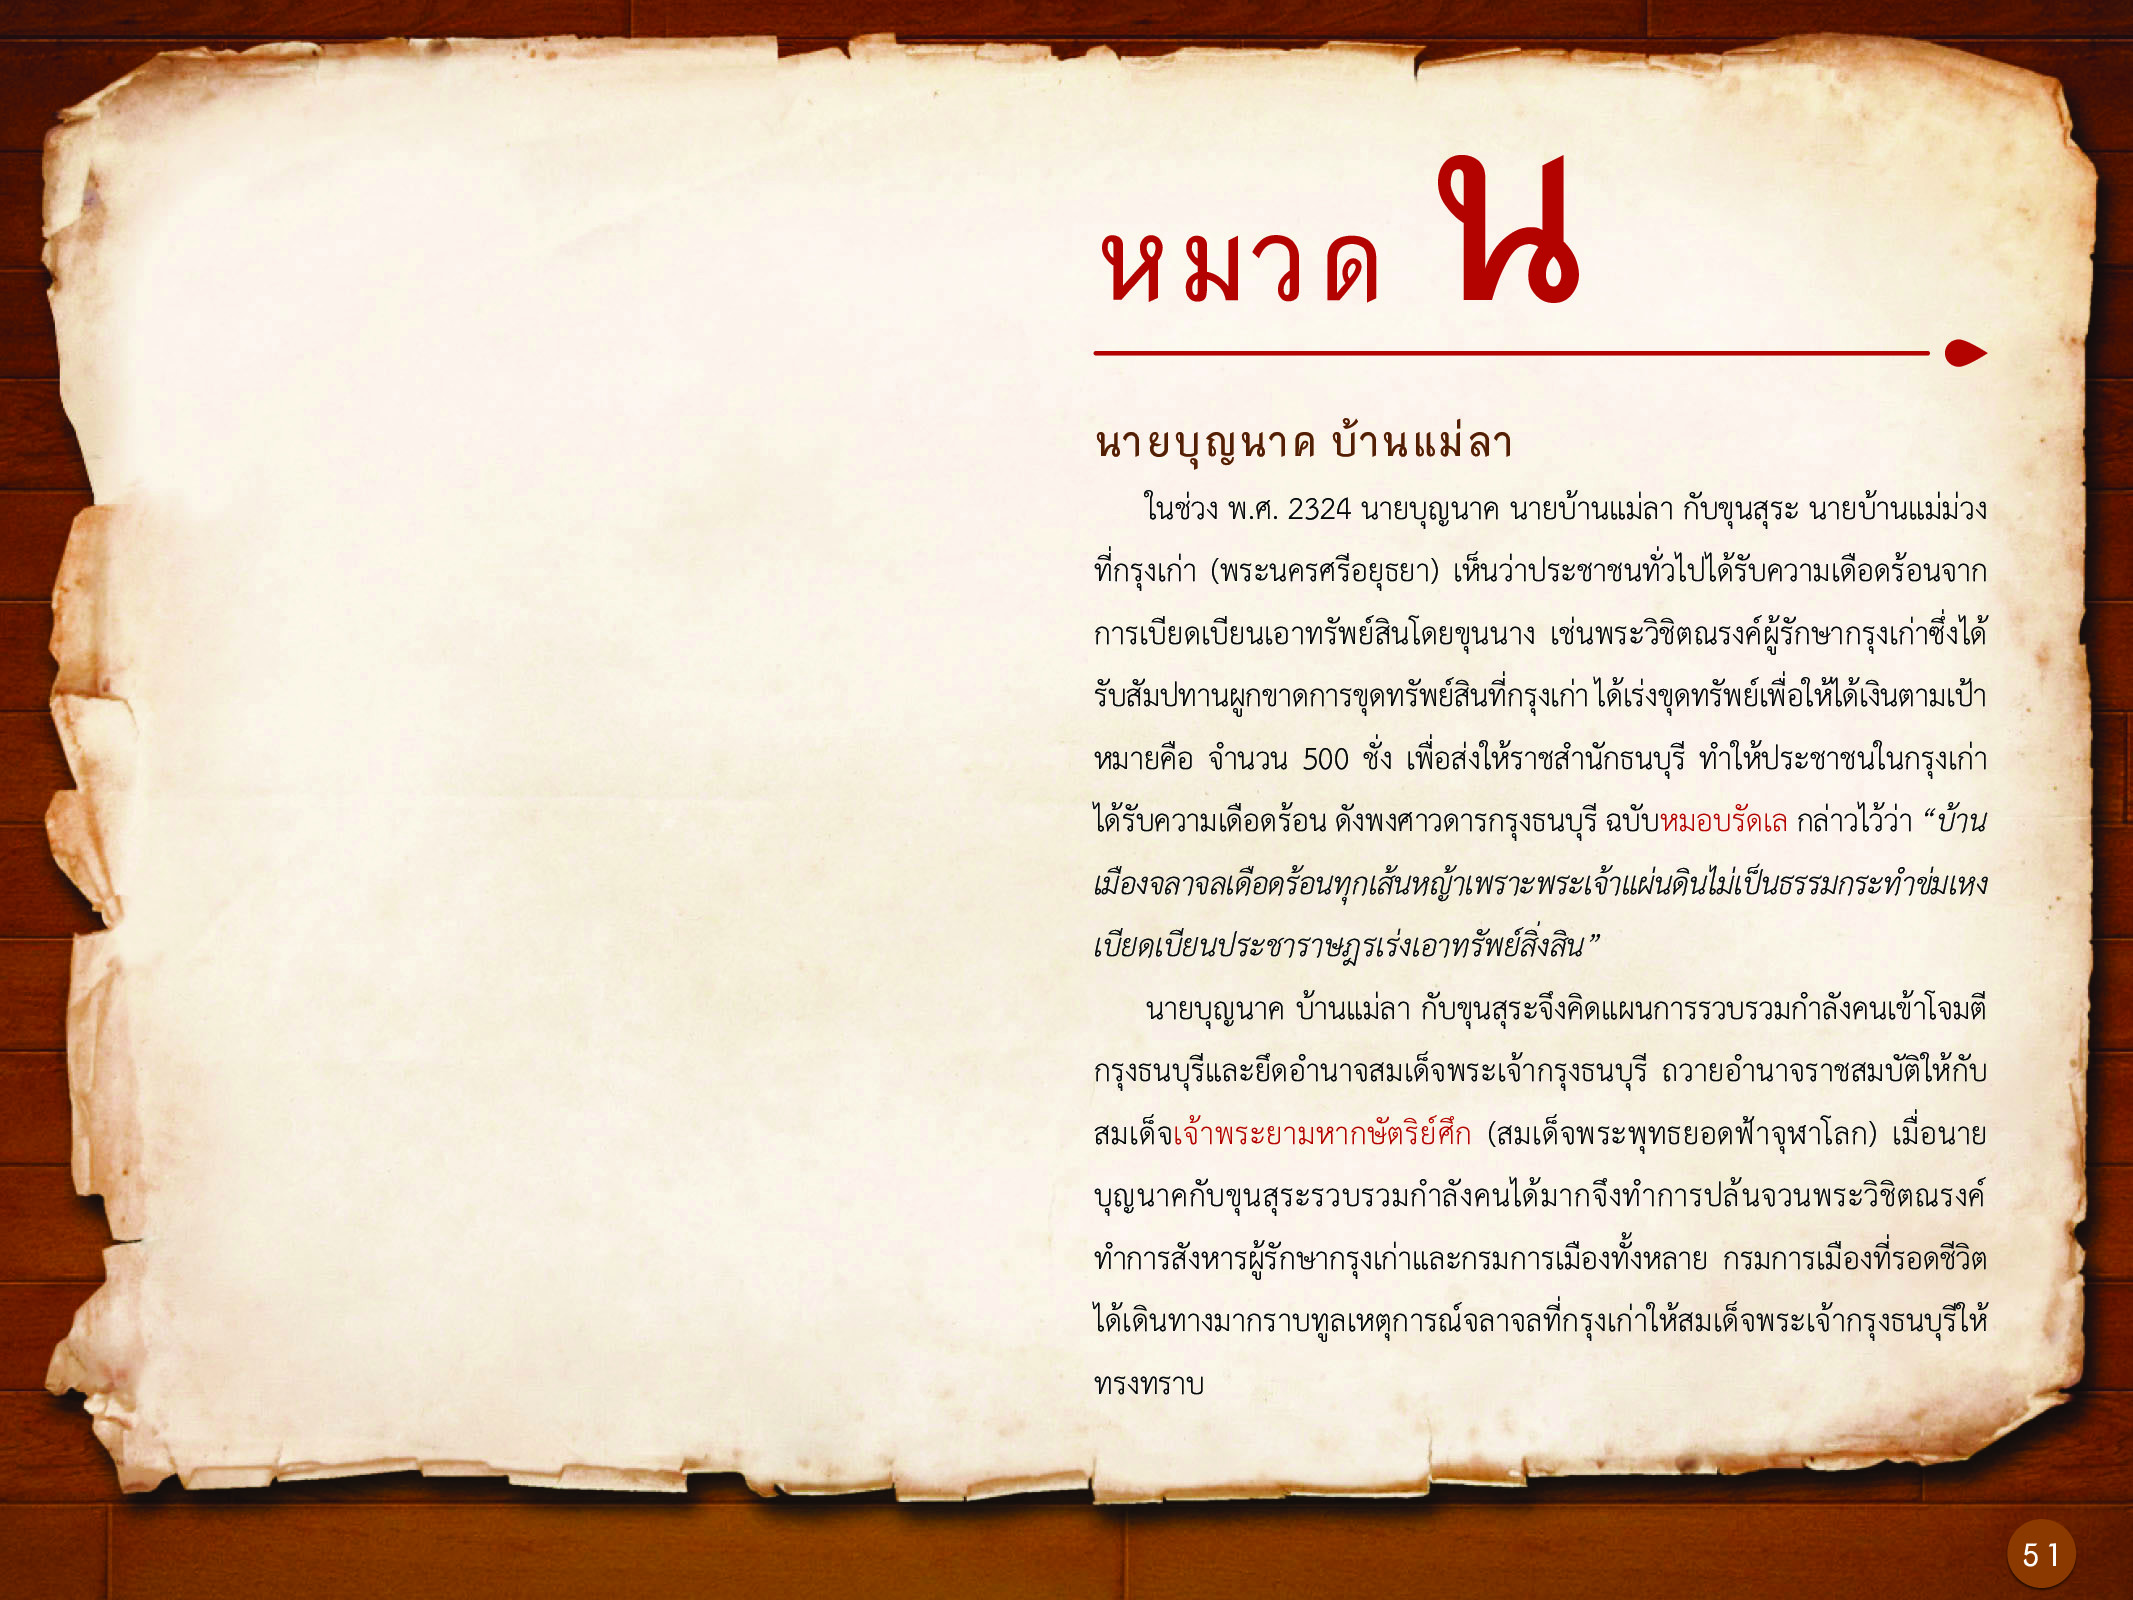 ประวัติศาสตร์กรุงธนบุรี ./images/history_dhonburi/51.jpg